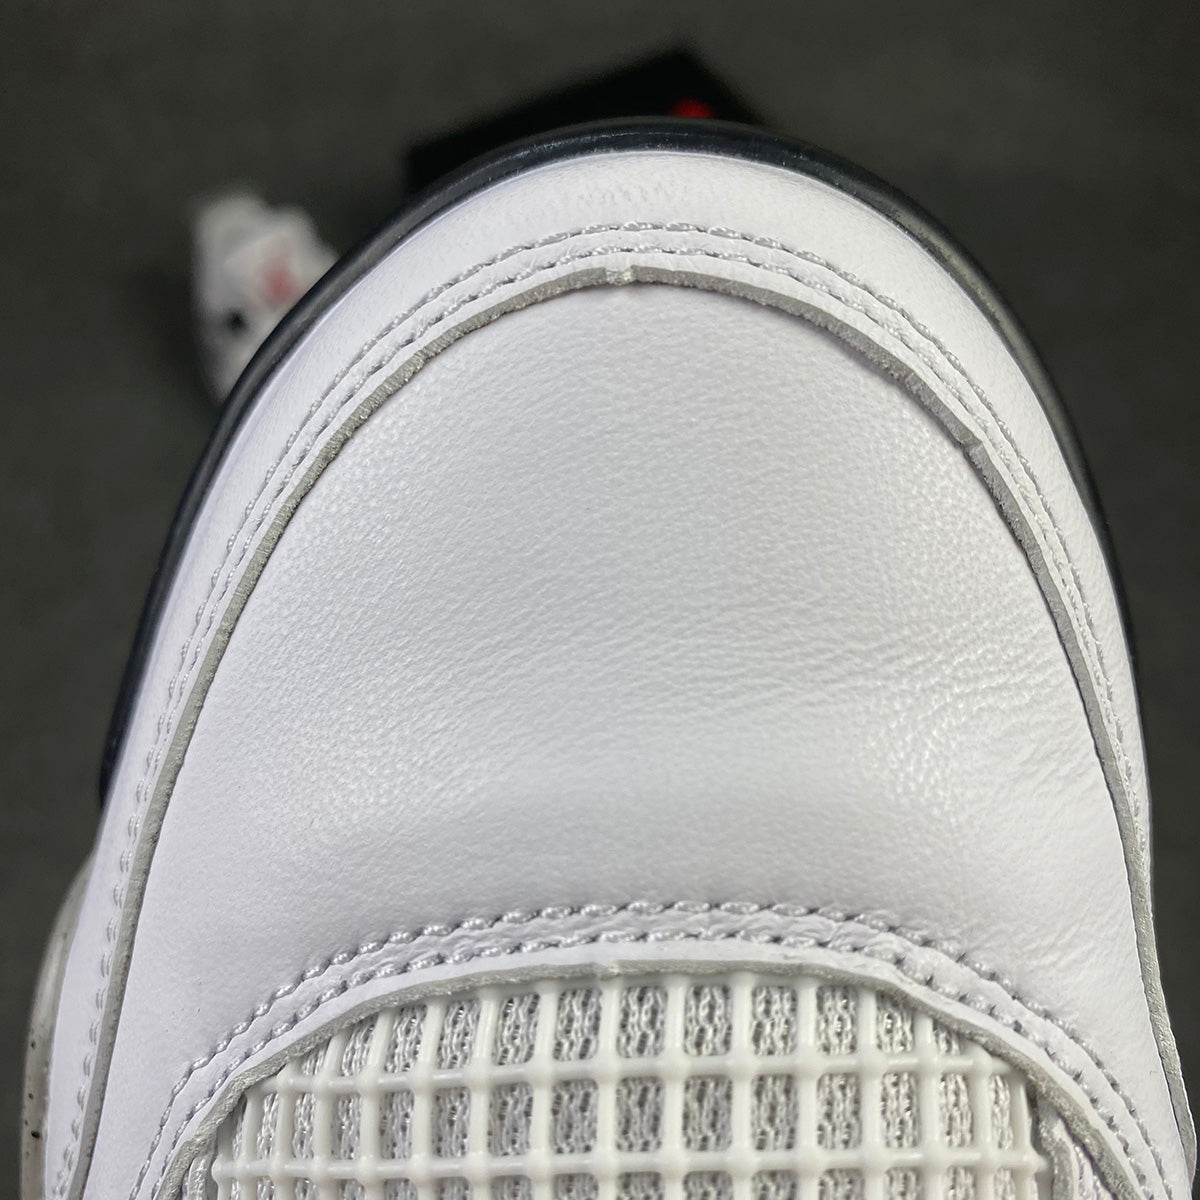 Air Jordan 4 Retro OG 'White Cement' 2016